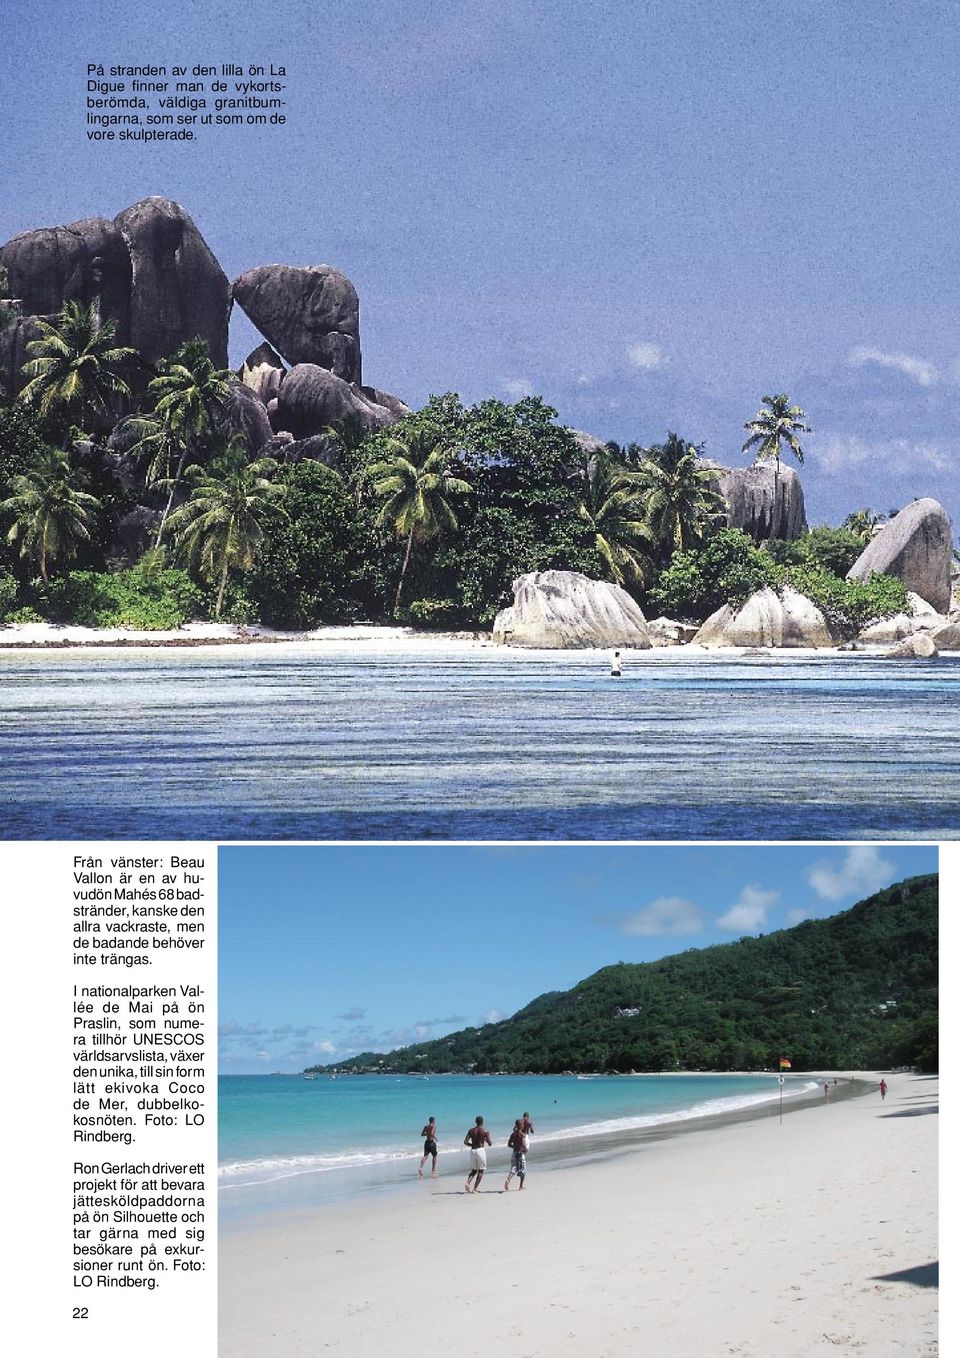 I nationalparken Vallée de Mai på ön Praslin, som numera tillhör UNESCOS världsarvslista, växer den unika, till sin form lätt ekivoka Coco de Mer,